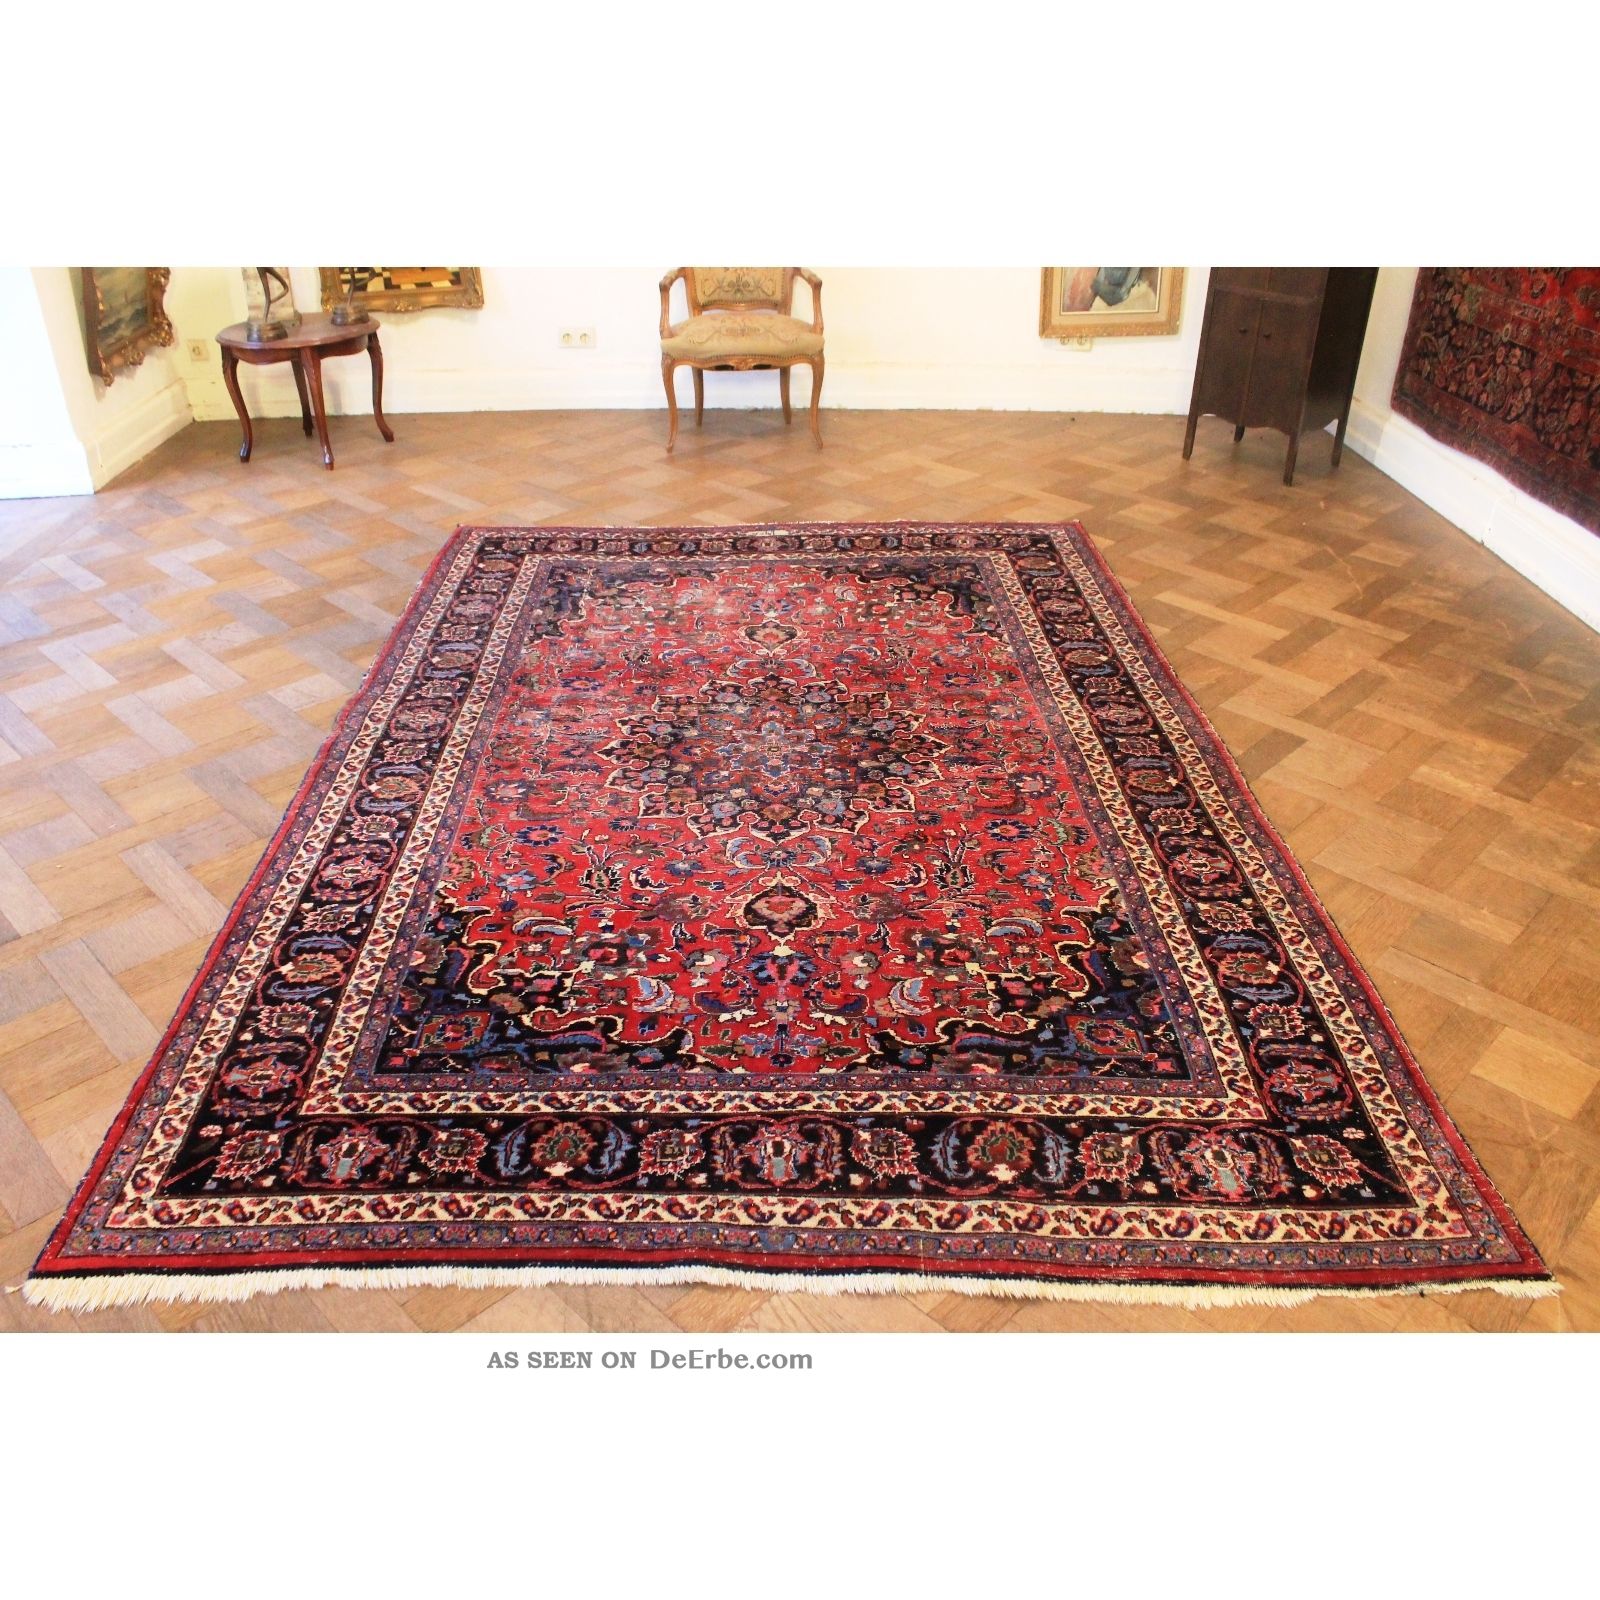 Signierter Orient Palast Perser Teppich Blumen Jugendstilmotiv Carpet 205x300cm Teppiche & Flachgewebe Bild